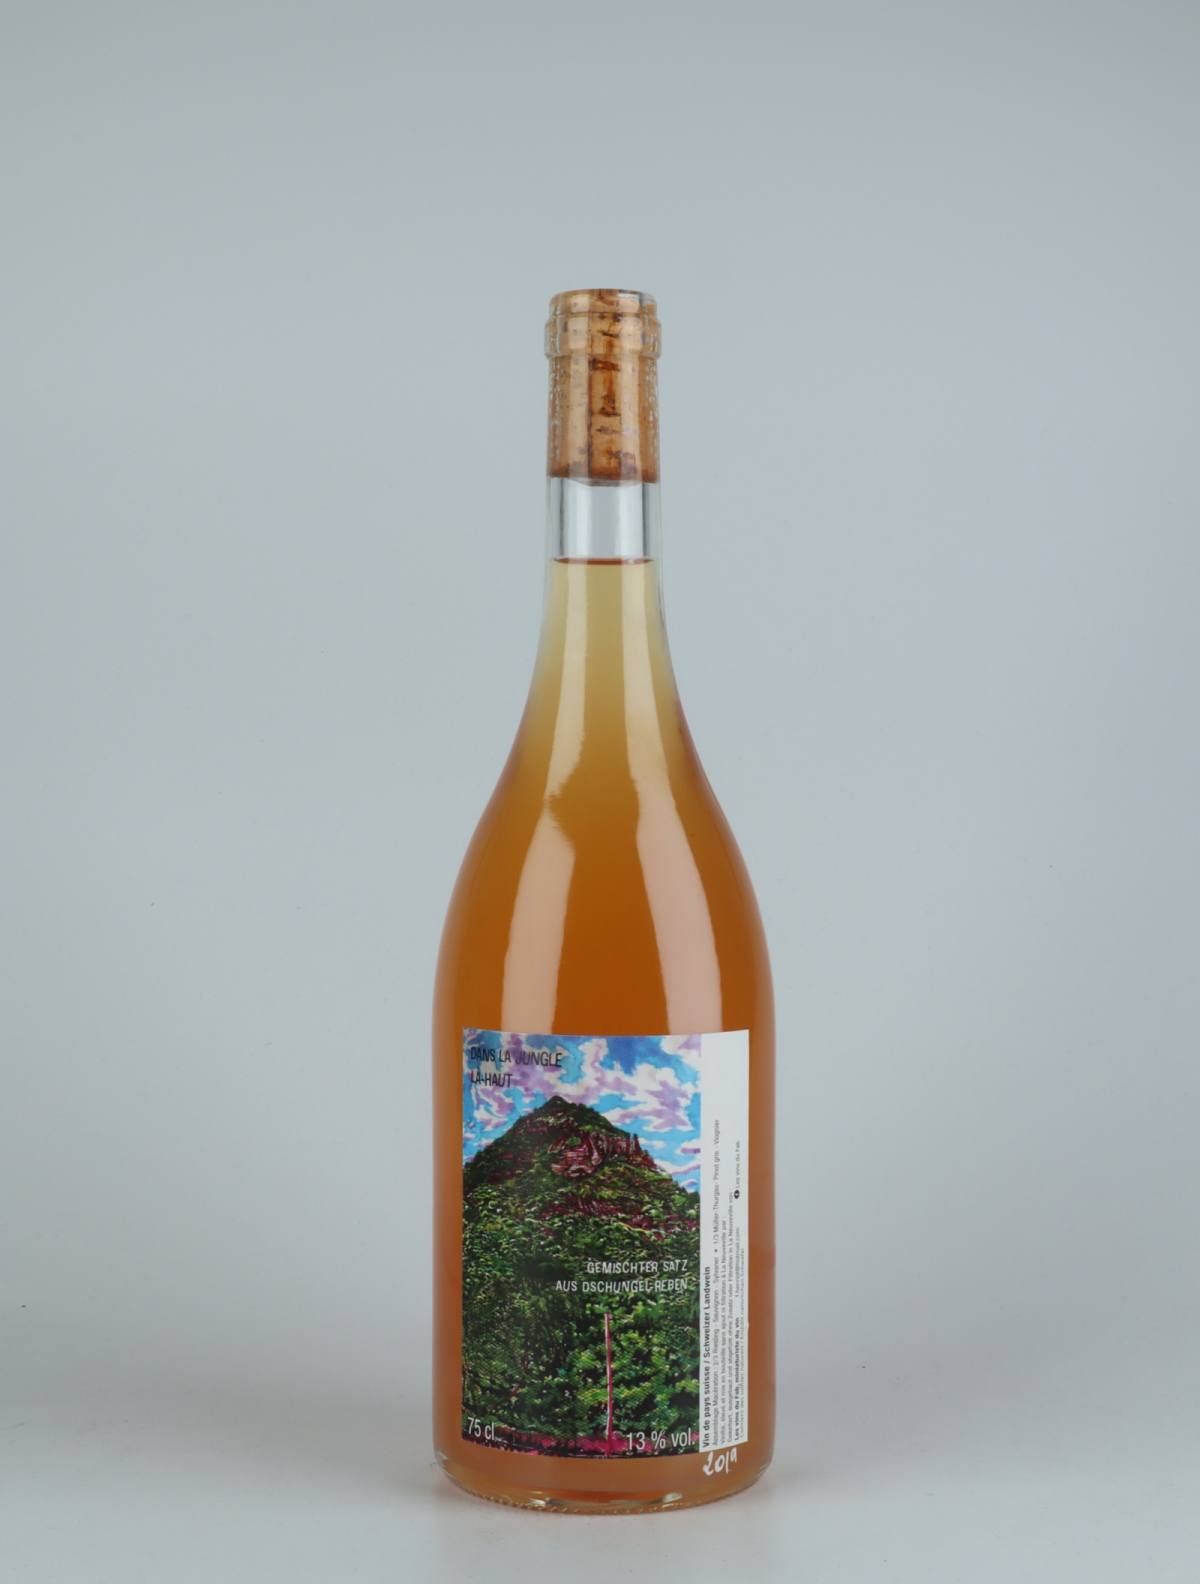 A bottle 2019 Dans la Jungle La-Haut Orange wine from , Neuchâtel in Switzerland